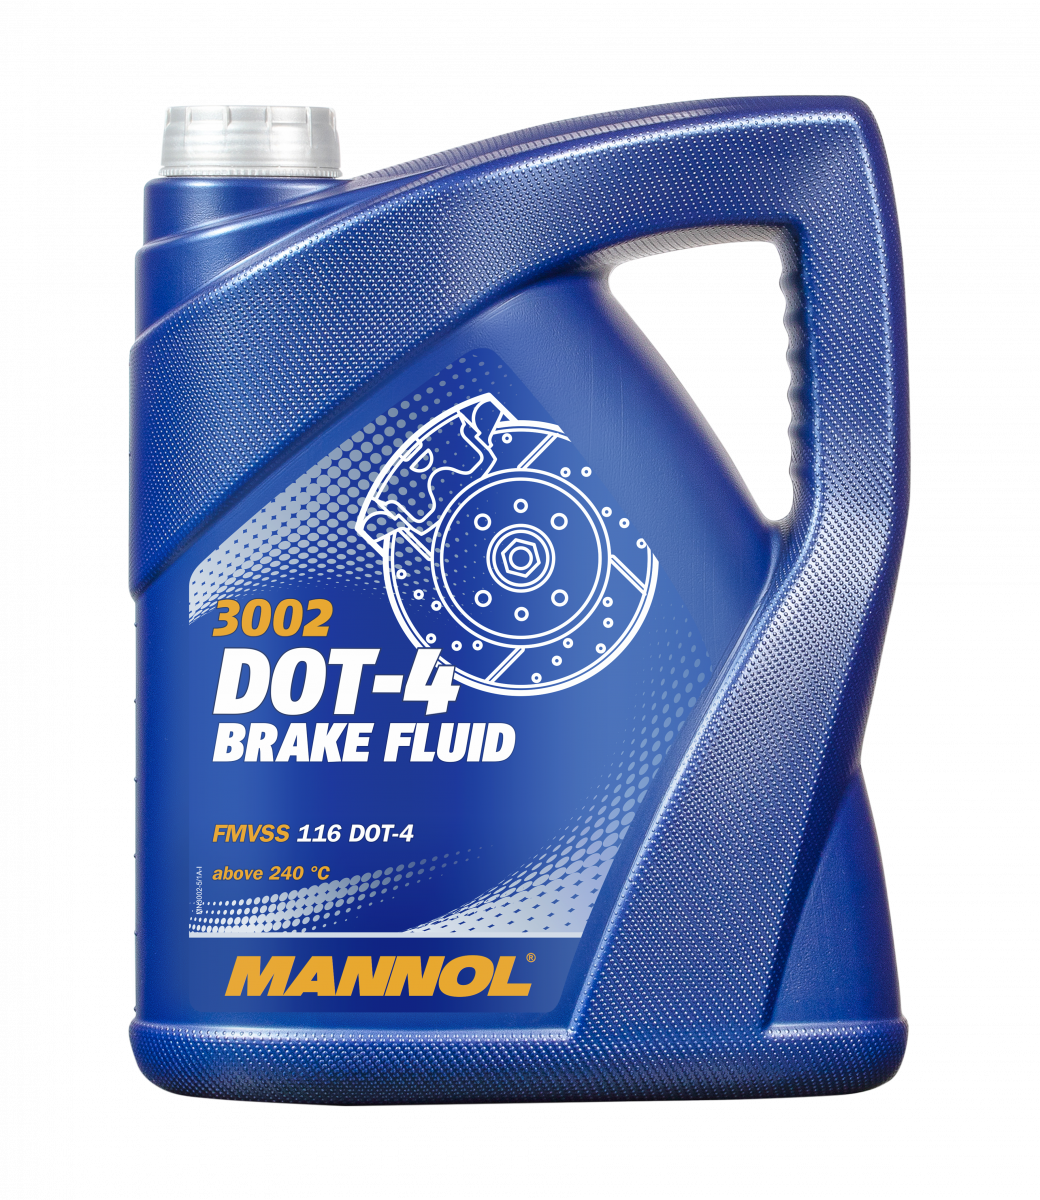 MANNOL Brake Fluid DOT-4 Bremsflüssigkeit SAE J 1703/ ISO 4925 5 Liter